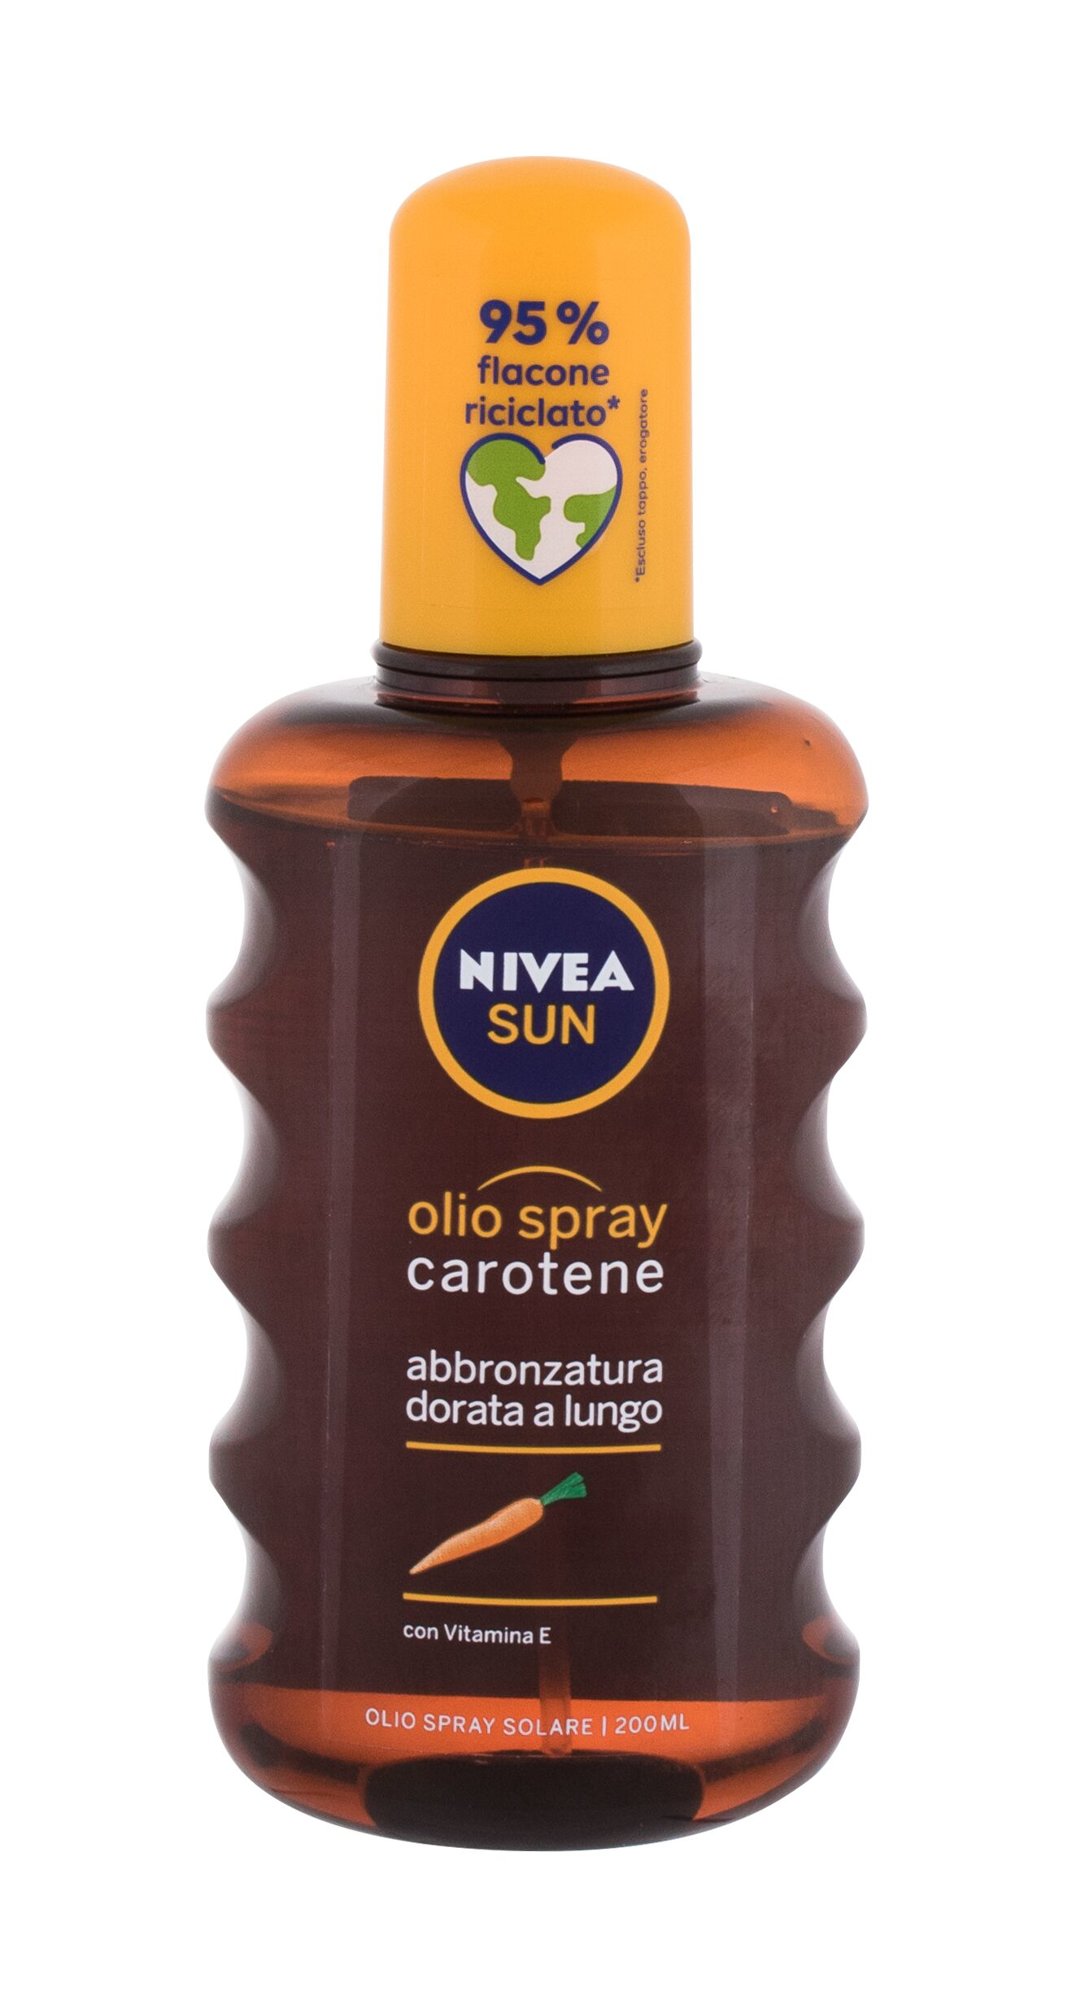 Nivea Sun Carotene Oil Spray įdegio losjonas